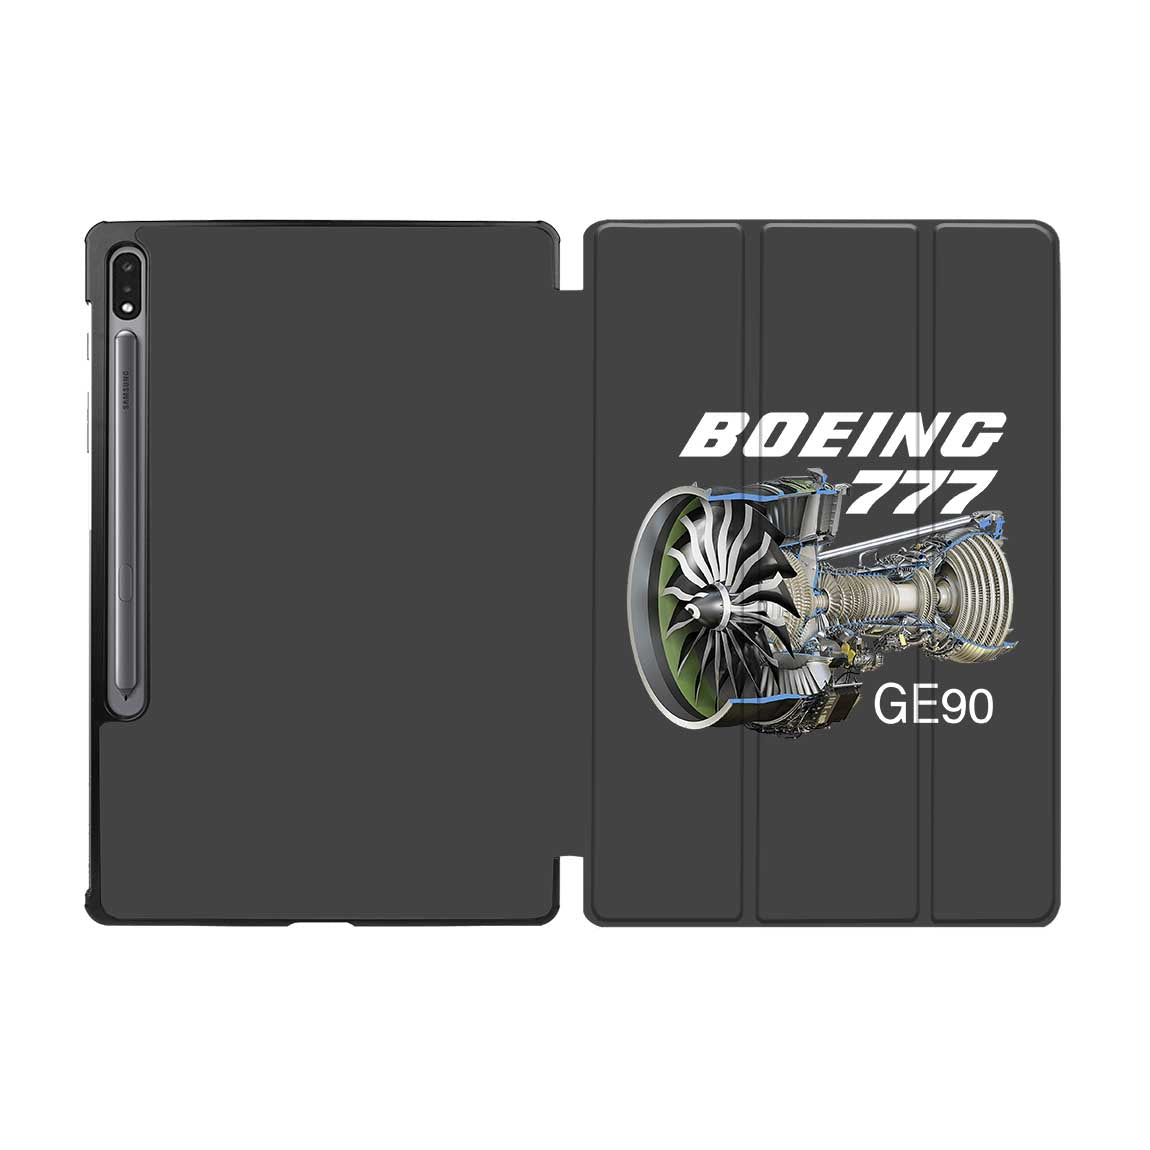 Boeing 777 & GE90 Engine Designed Samsung Tablet Cases